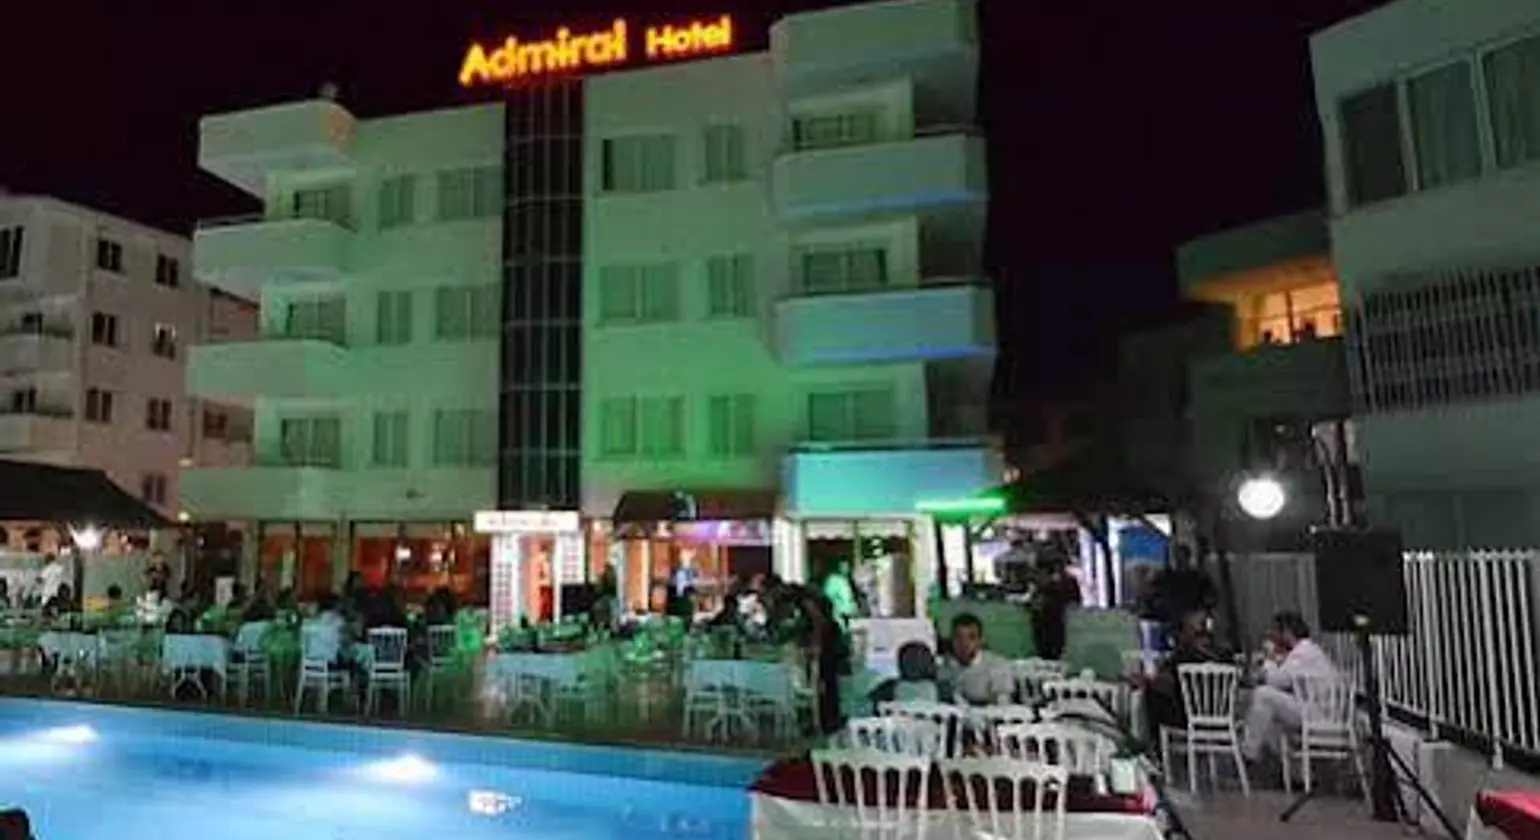 Park Admiral Hotel